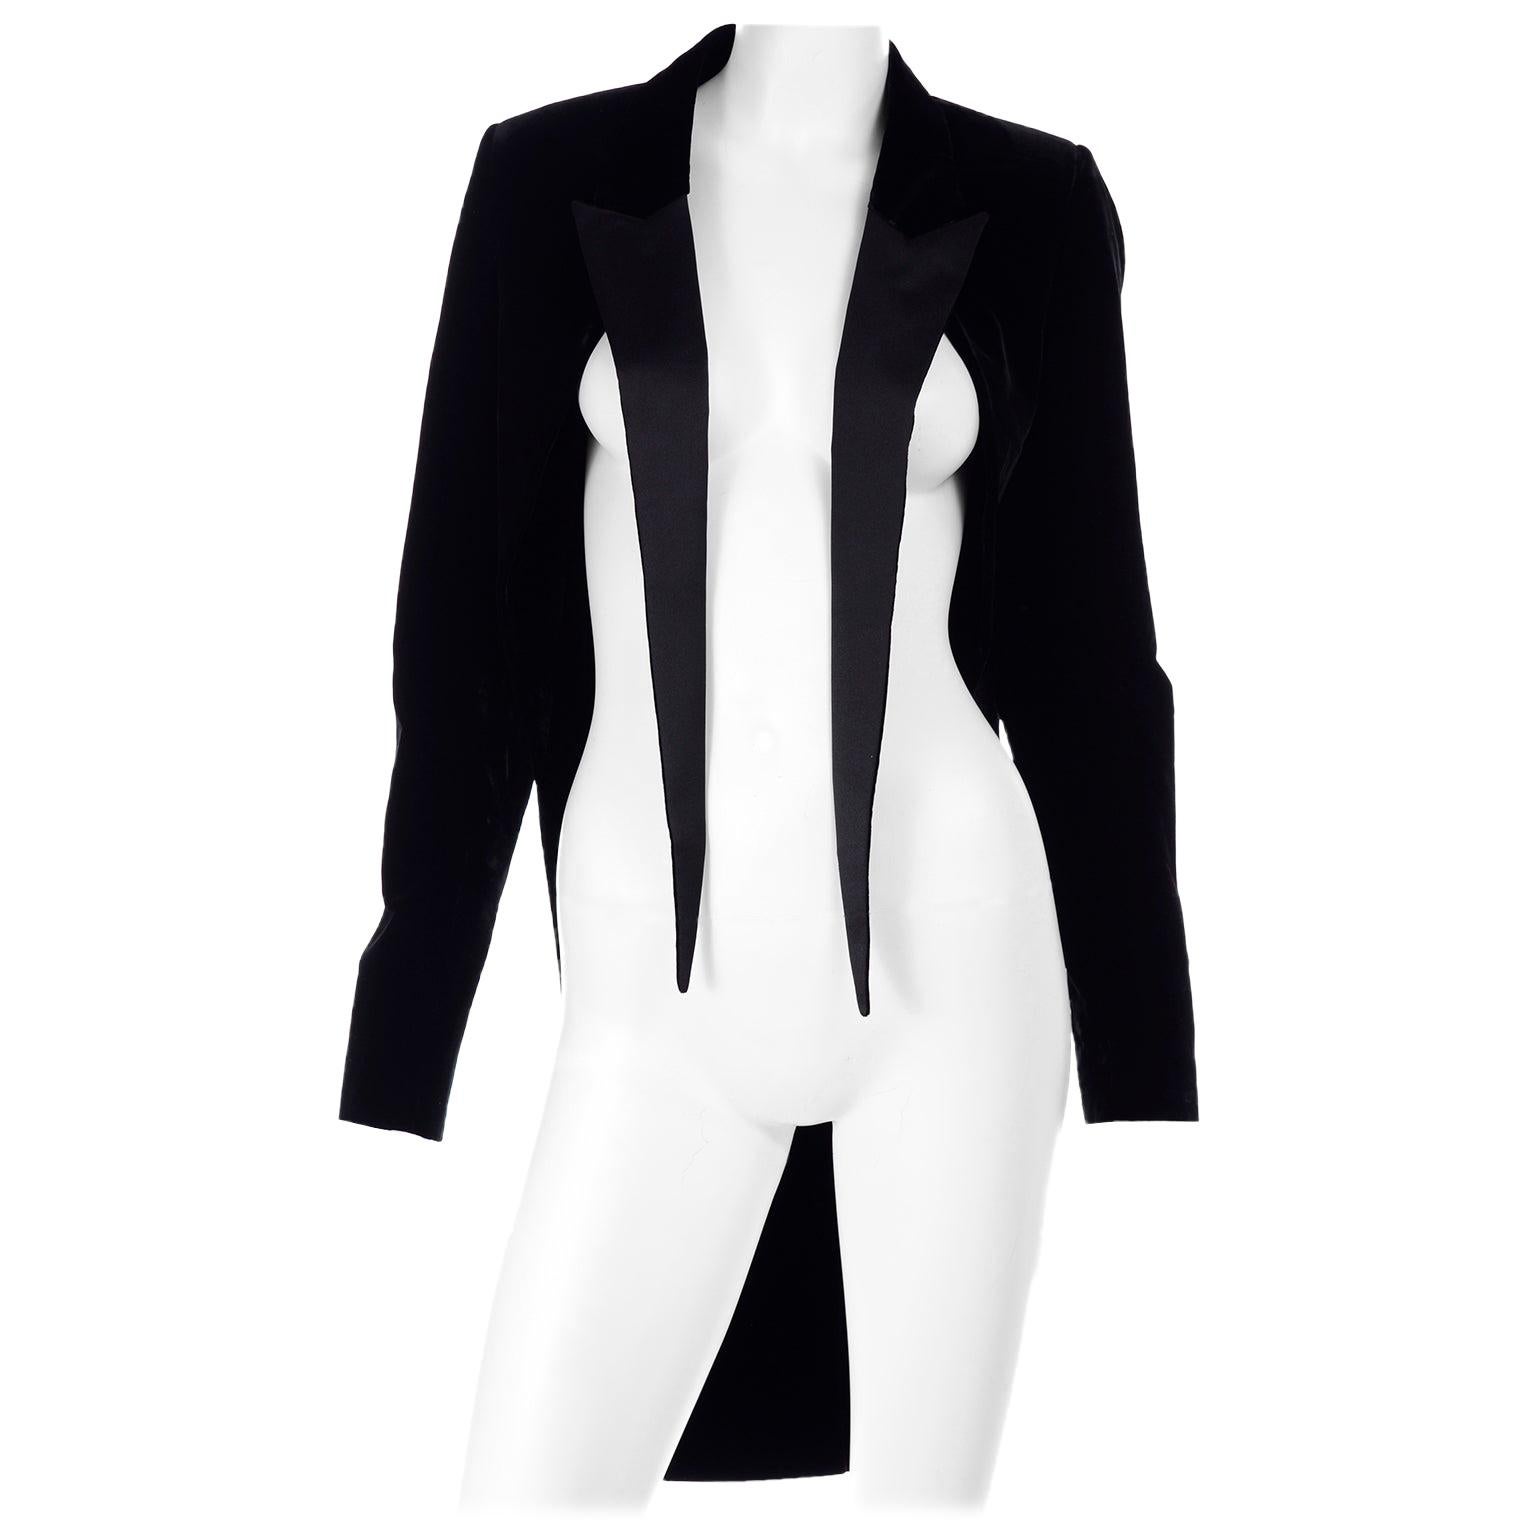 Saint Laurent Paris Black Cutaway Tuxedo Jacket in Velvet & Satin w/ Tails For Sale